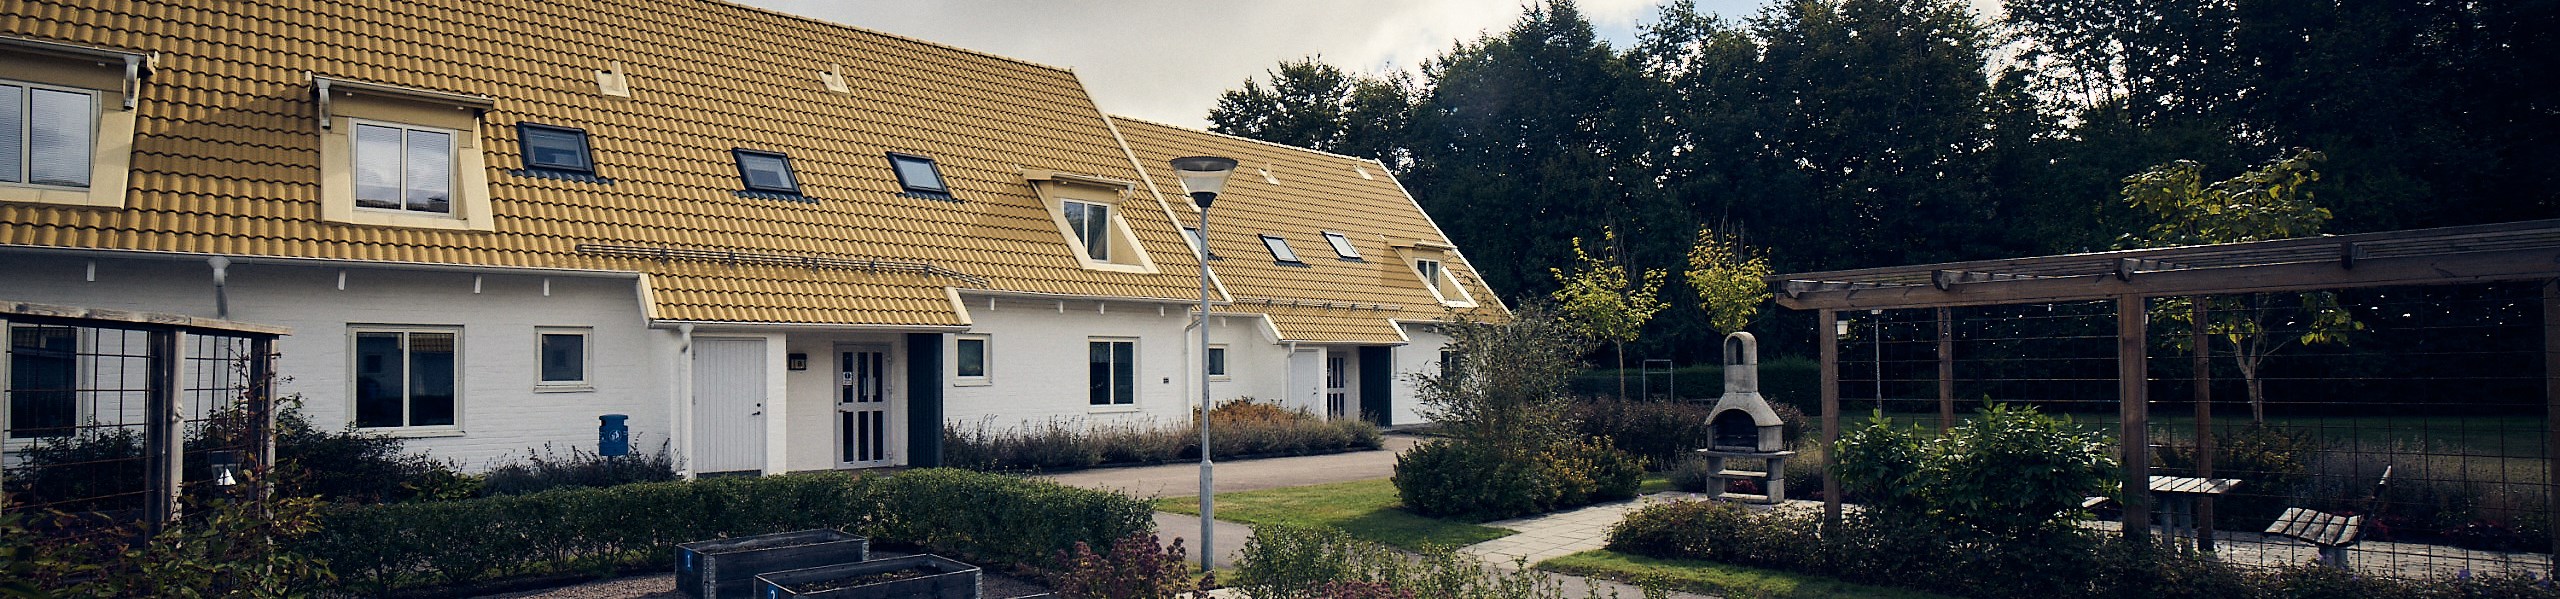 Kedjehus med gult tak och vitfasad med grillplats och odlingslådor